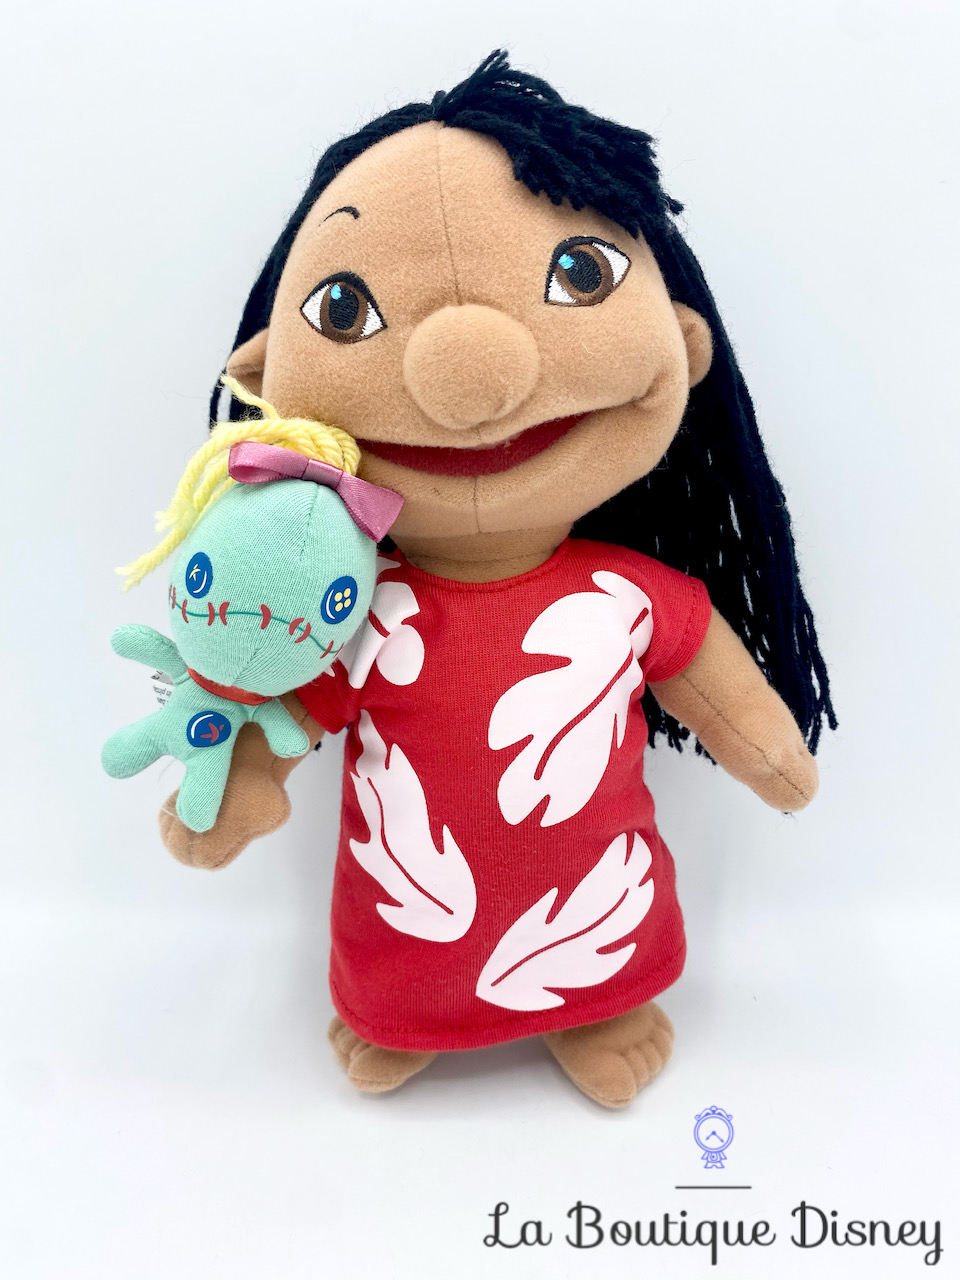 Petite peluche Souillon, Lilo et Stitch - objet Peluches Disney Store